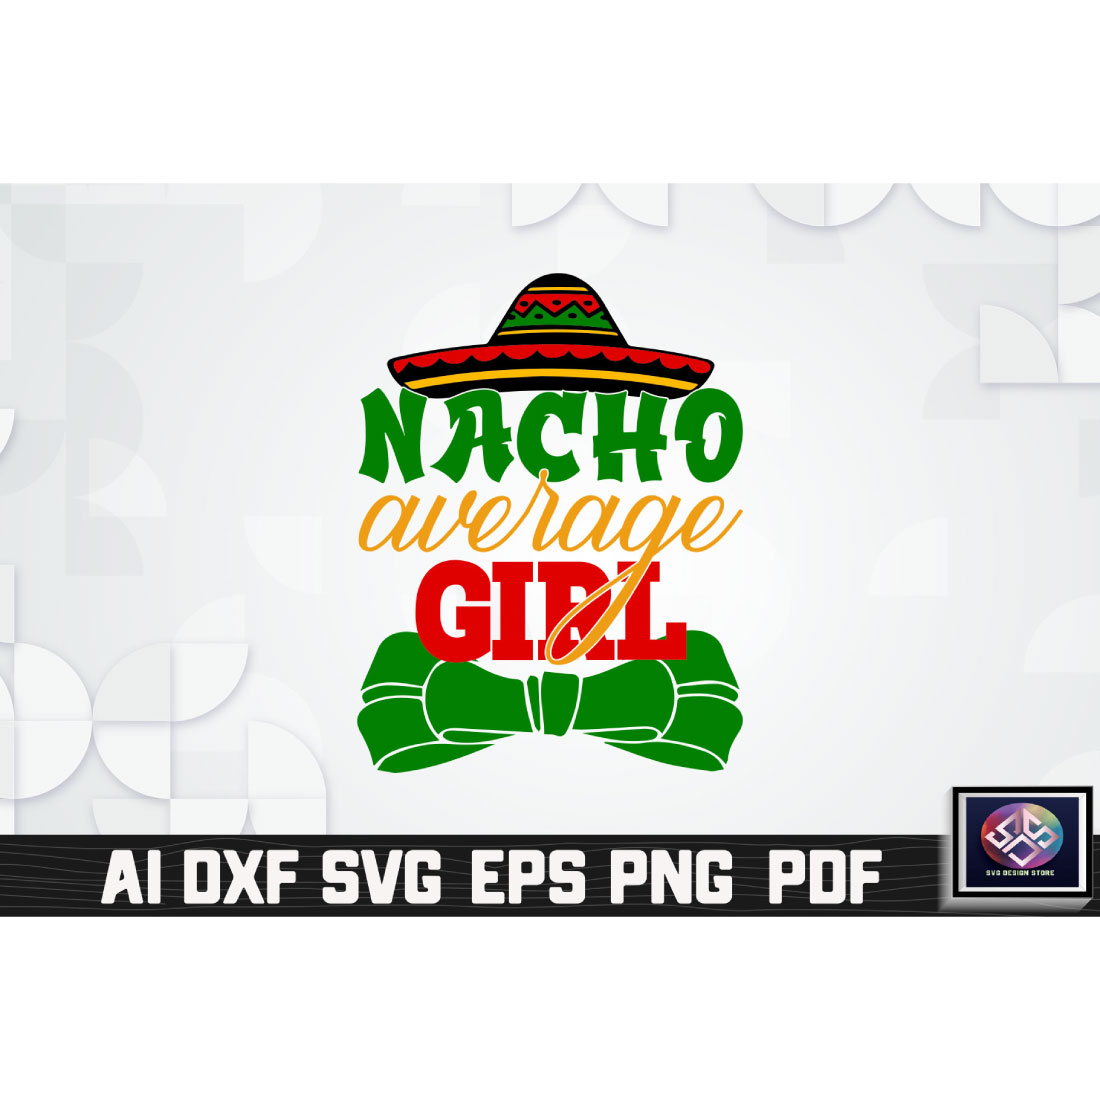 Nacho Average Girl cover image.